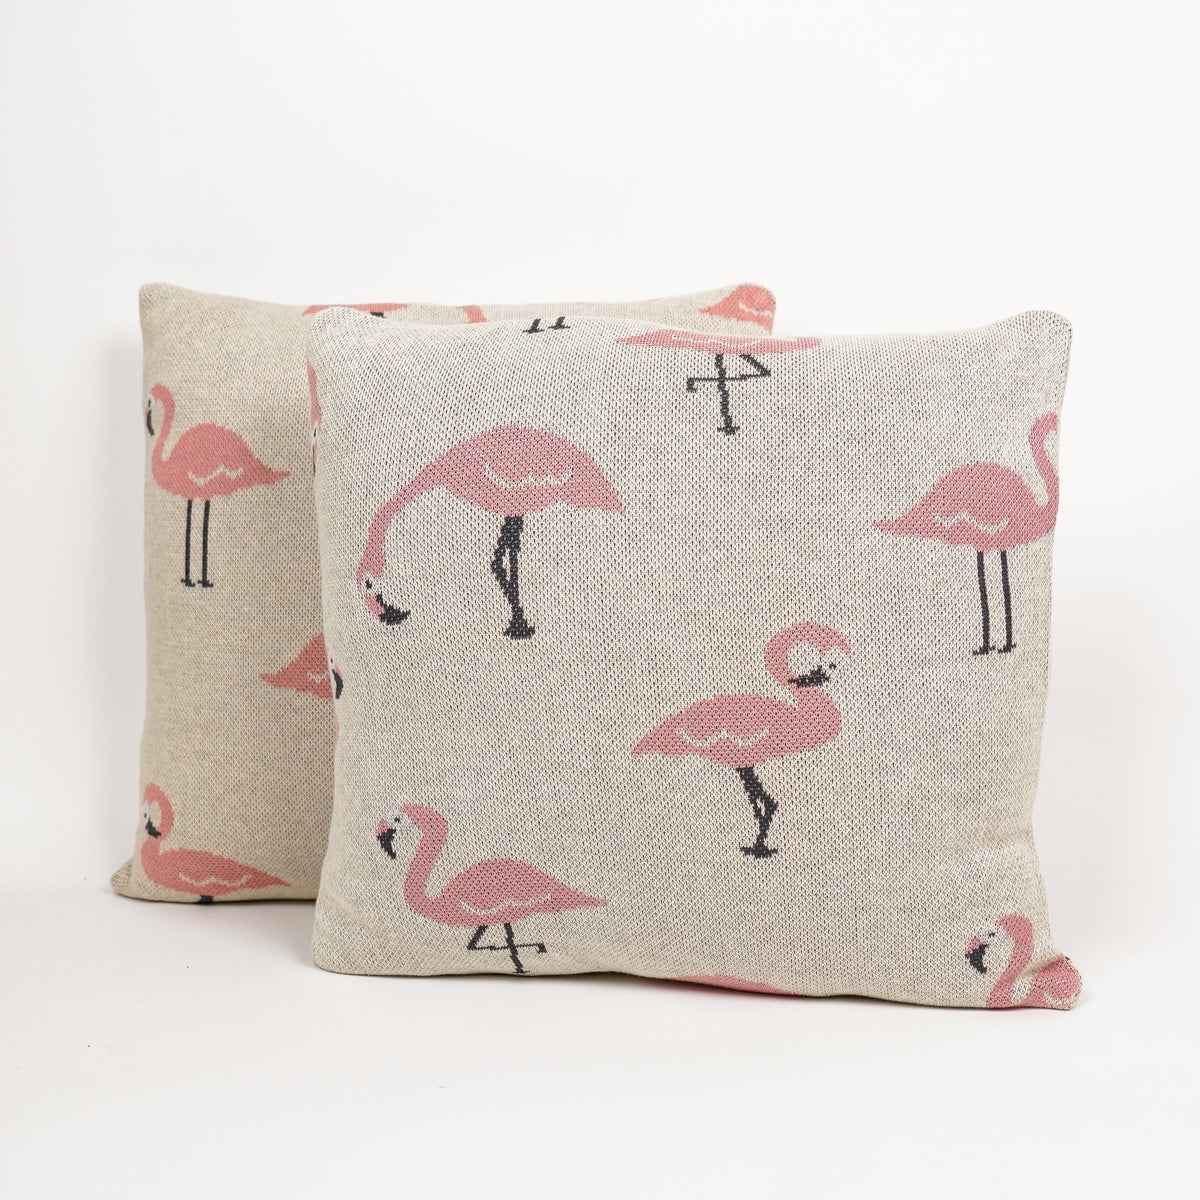     Flamingo Cushion Cover